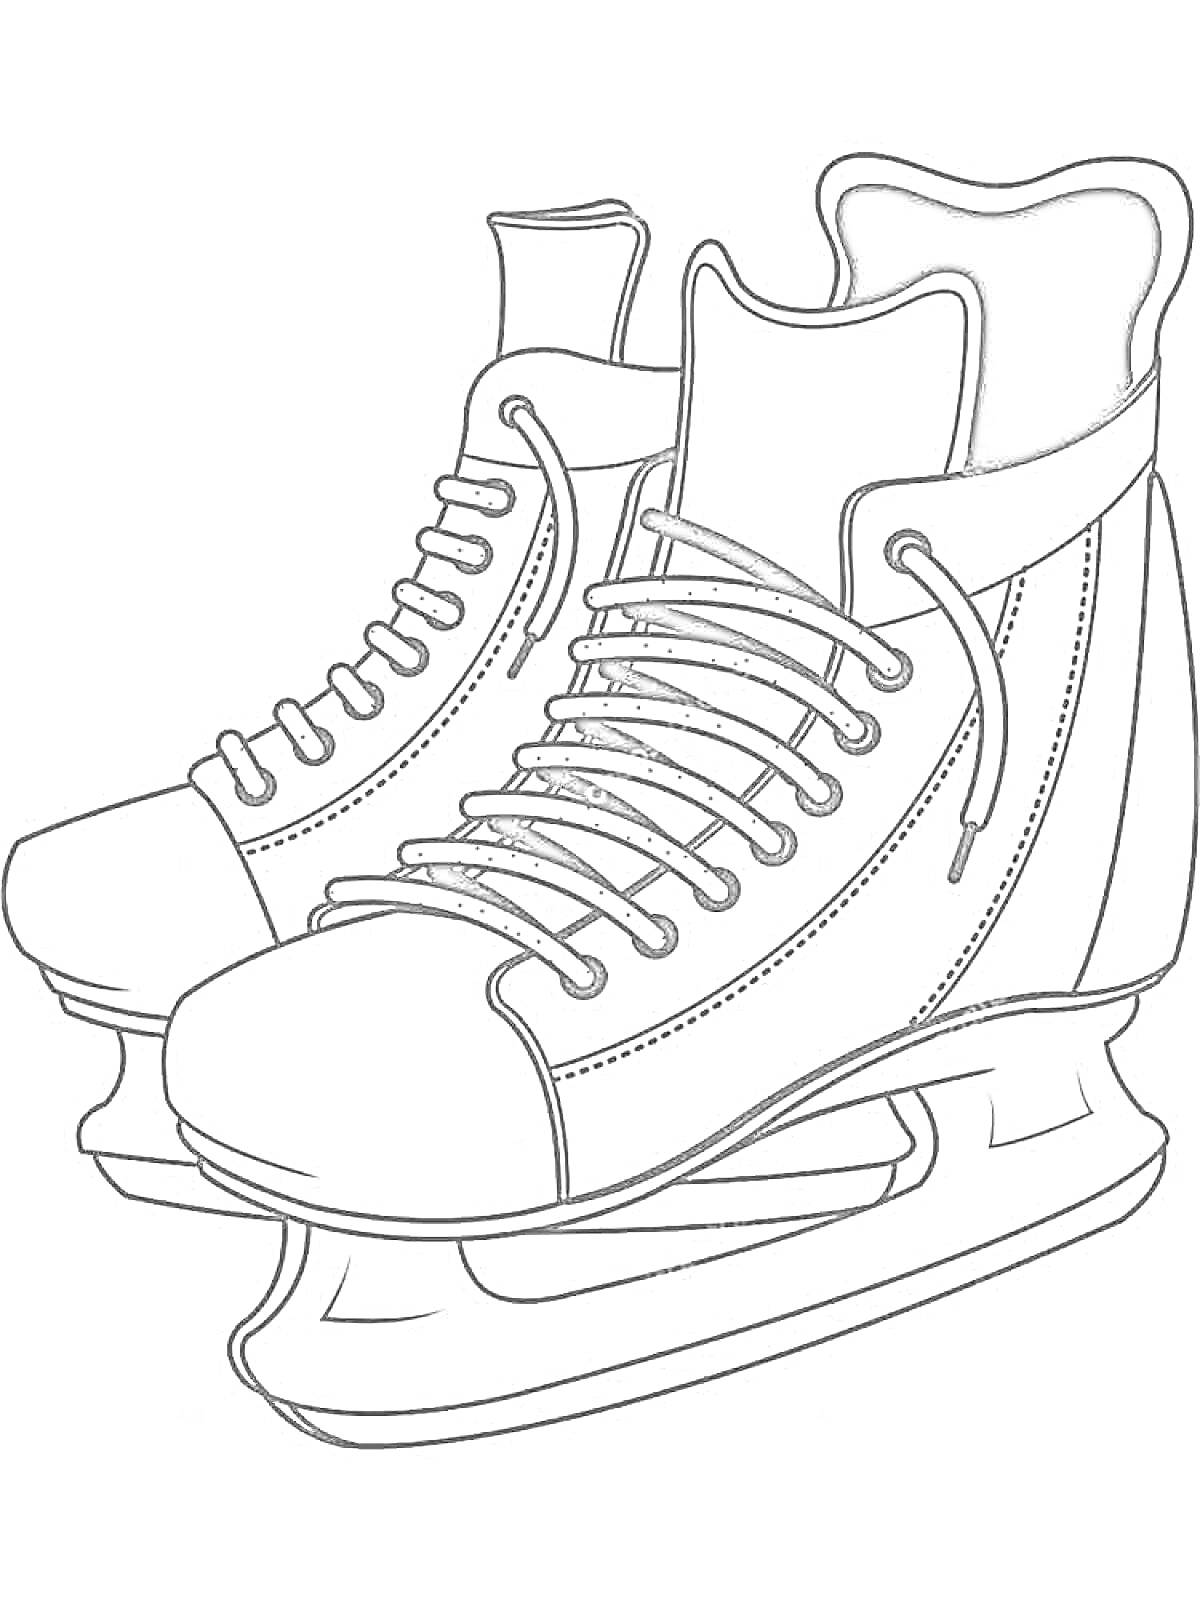 Раскраска Парные хоккейные коньки со шнурками